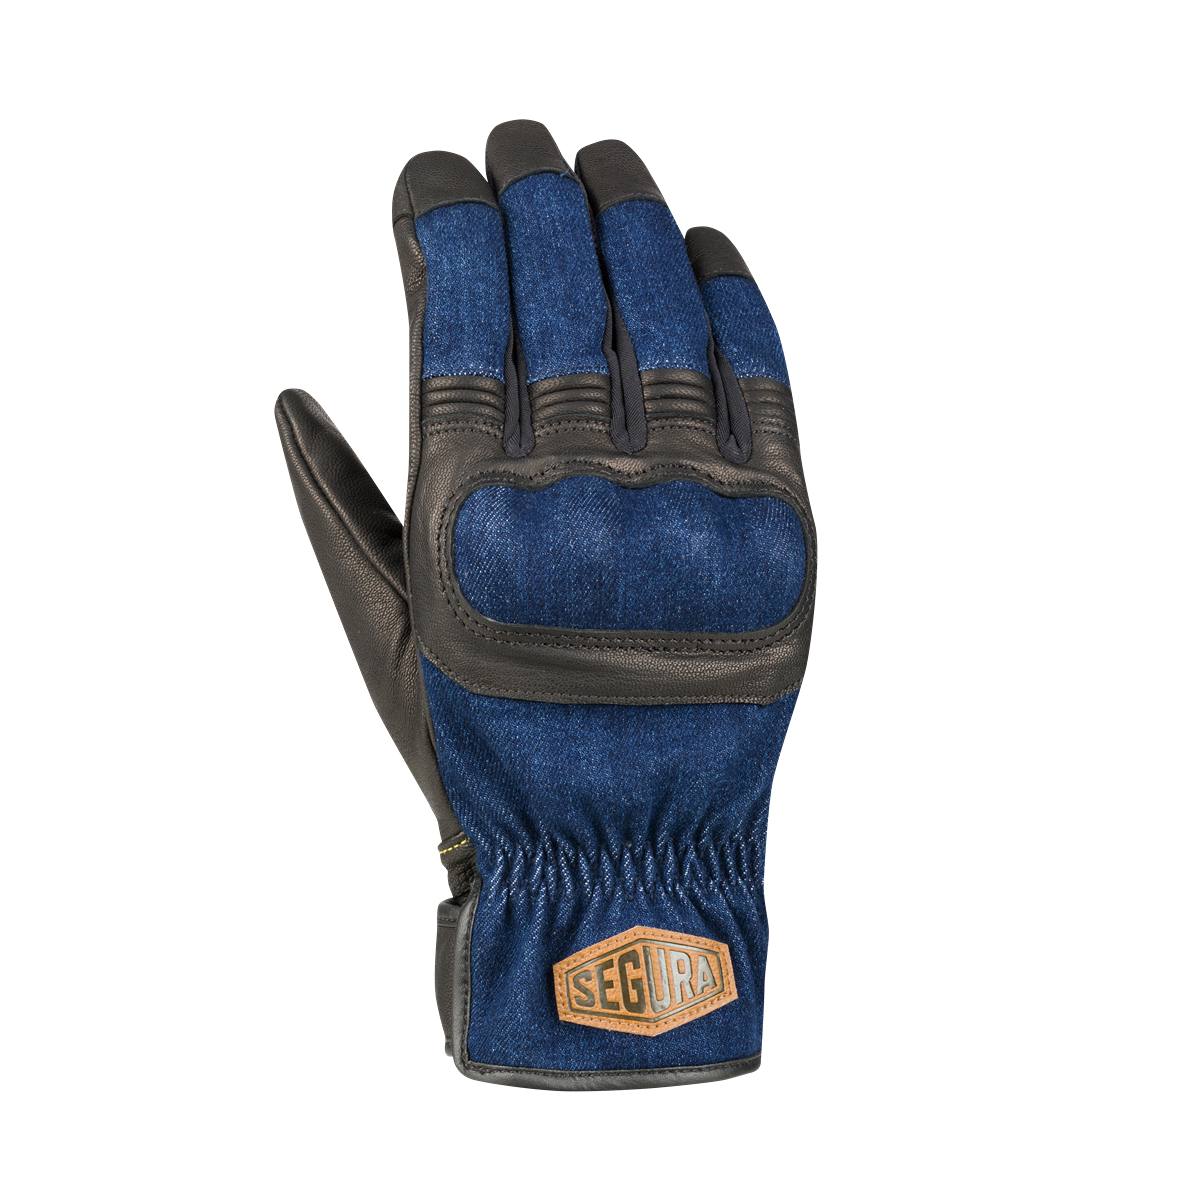 Image of Segura Hunky Gloves Black Blue Size T12 EN